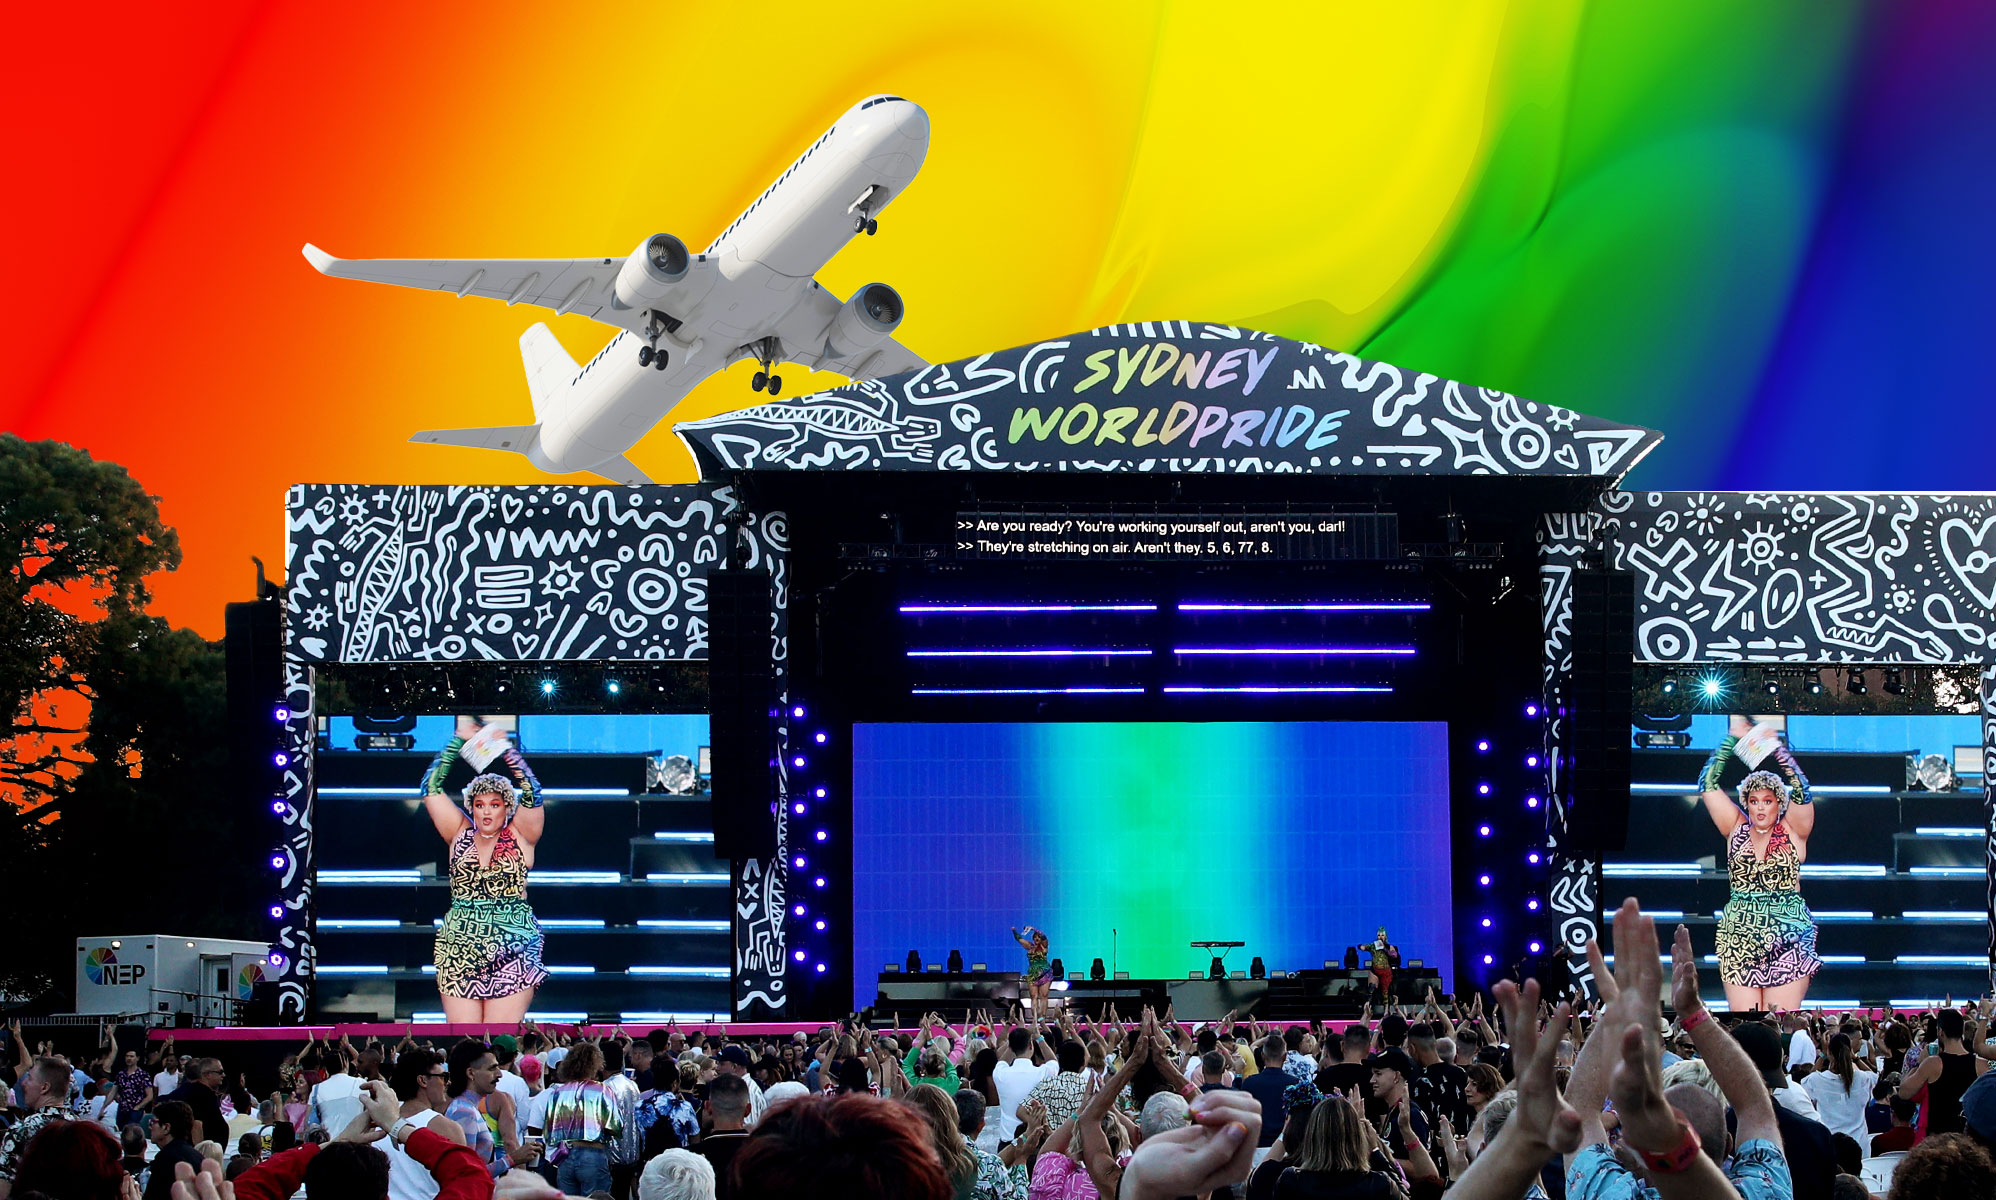 Un heterosexual vuela por accidente en el vuelo del WorldPride de Sydney